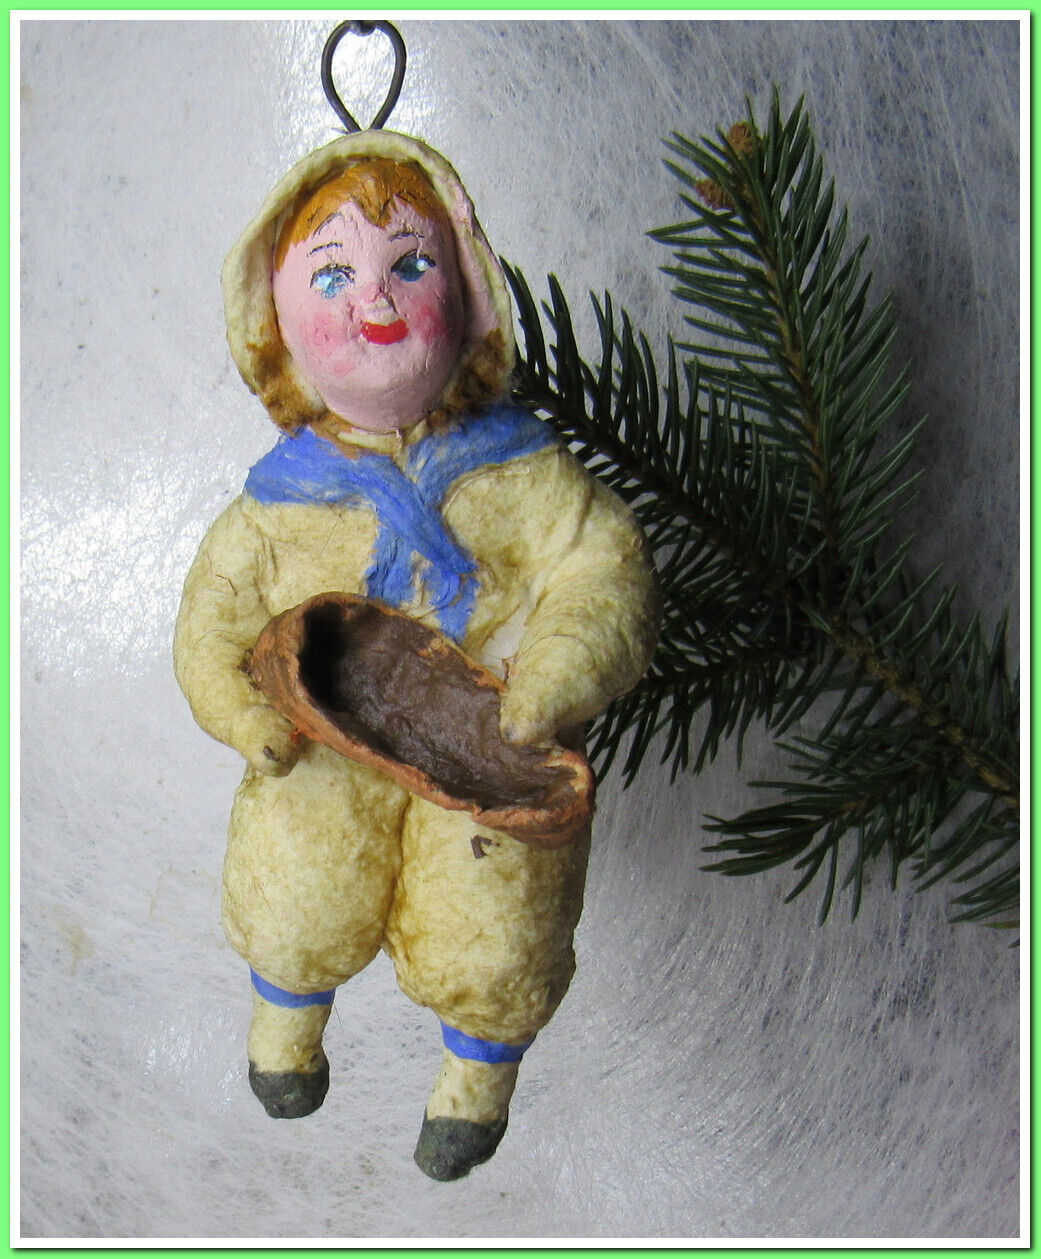 🎄Boy~Vintage antique Christmas spun cotton ornament figure #121248